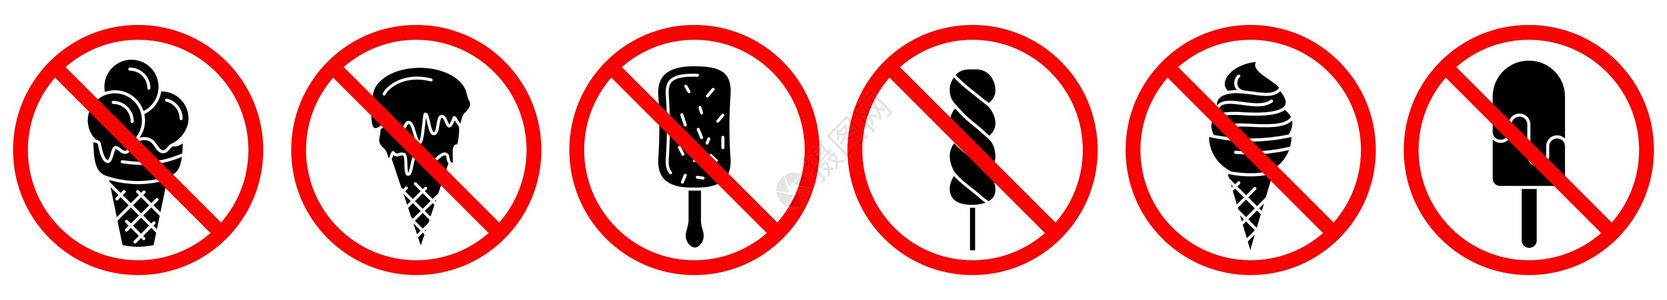 冰淇淋是禁止的 不准吃冰淇淋风险晶圆入口白色食物禁令警报标签圆形甜点插画